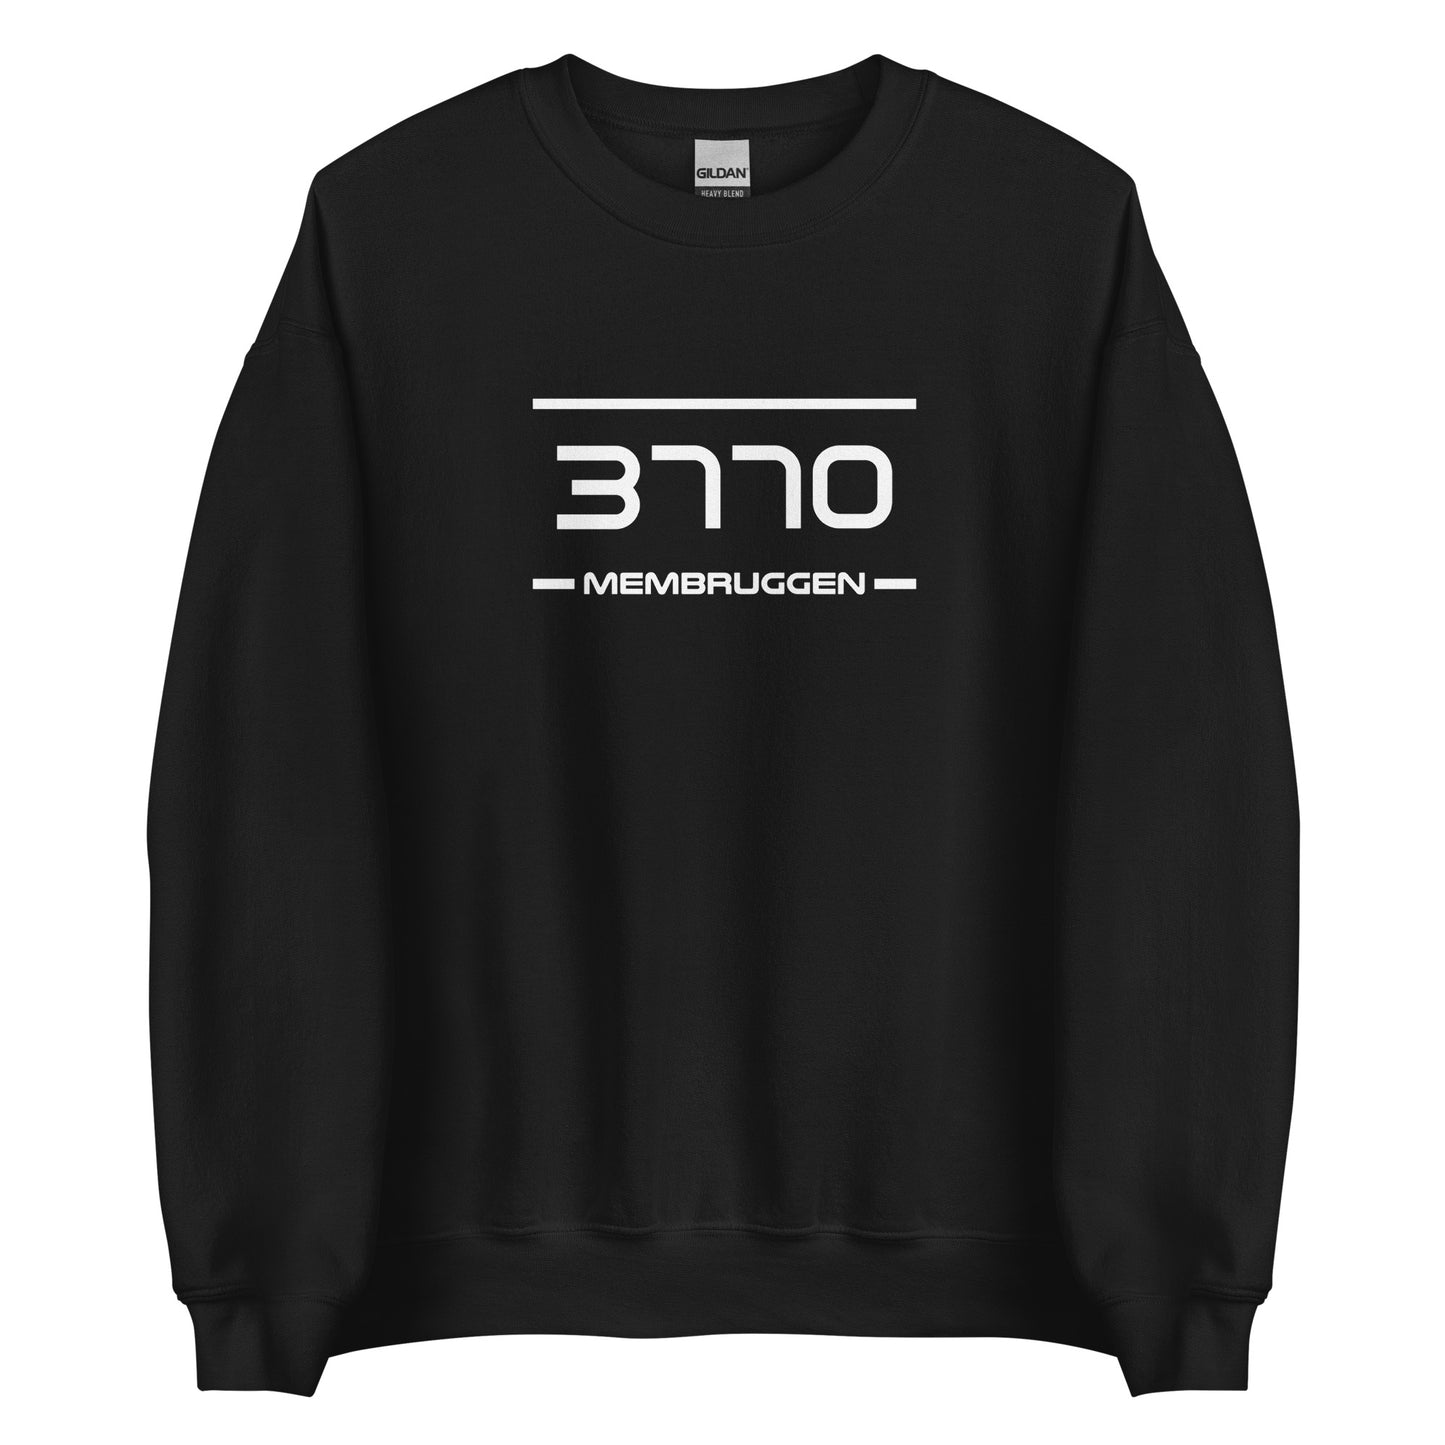 Sweater - 3770 - Membruggen (M/V)